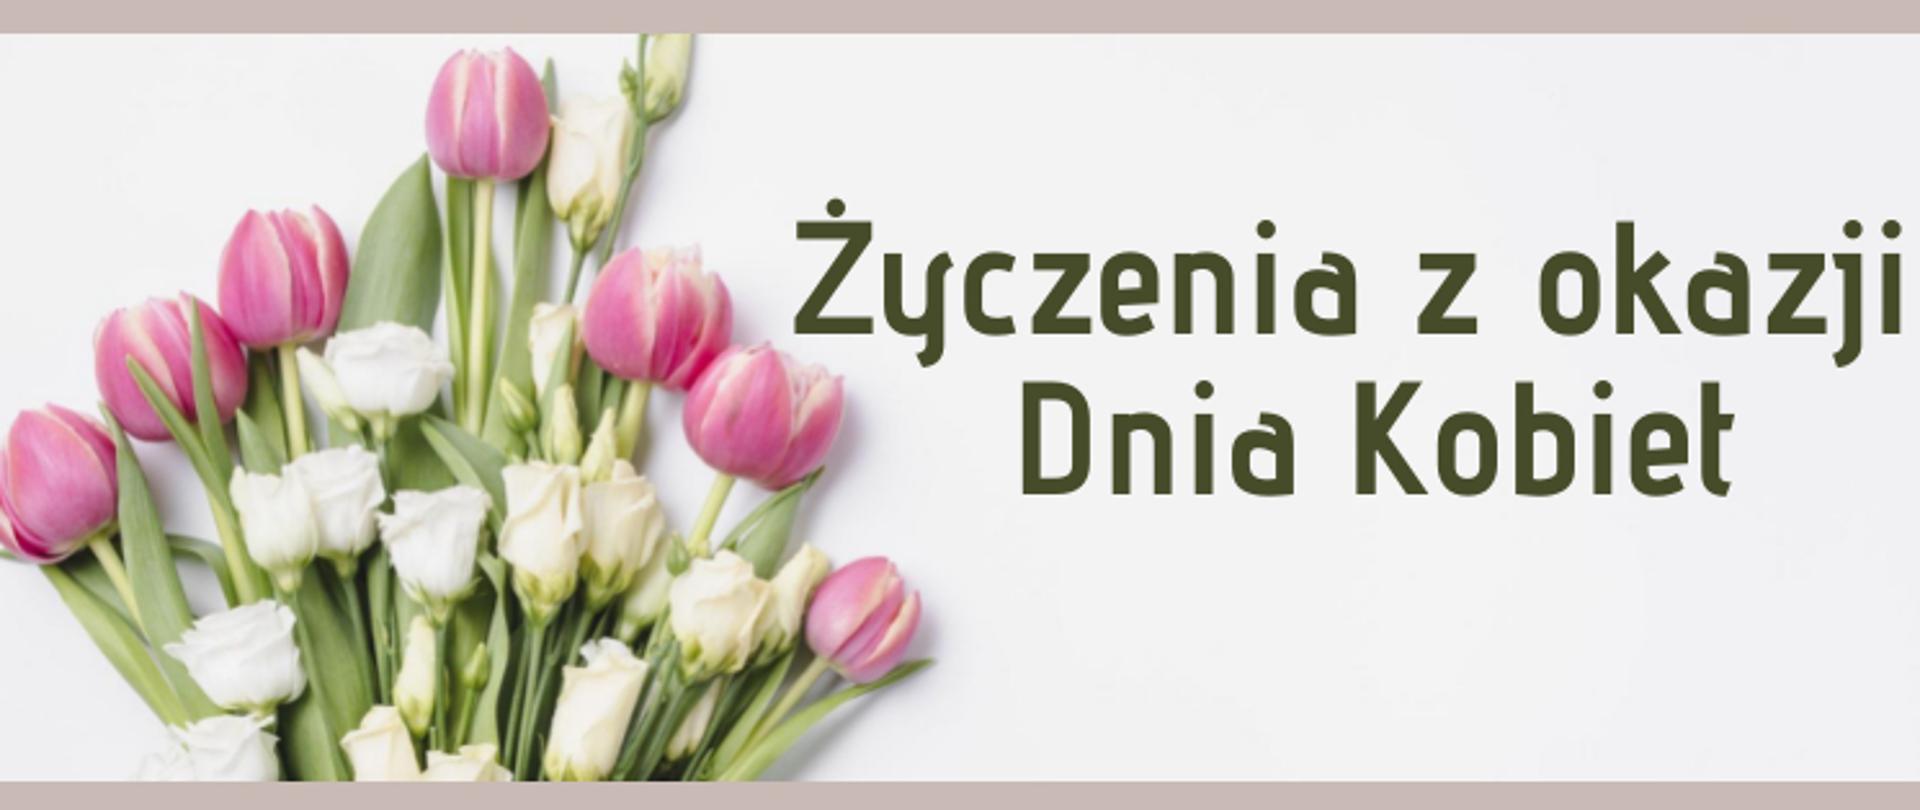 na jasnym tle bukiet różowych tulipanów i białych róż, po prawej stronie ciemnozielony napis: Życzenia z okazji Dnia Kobiet